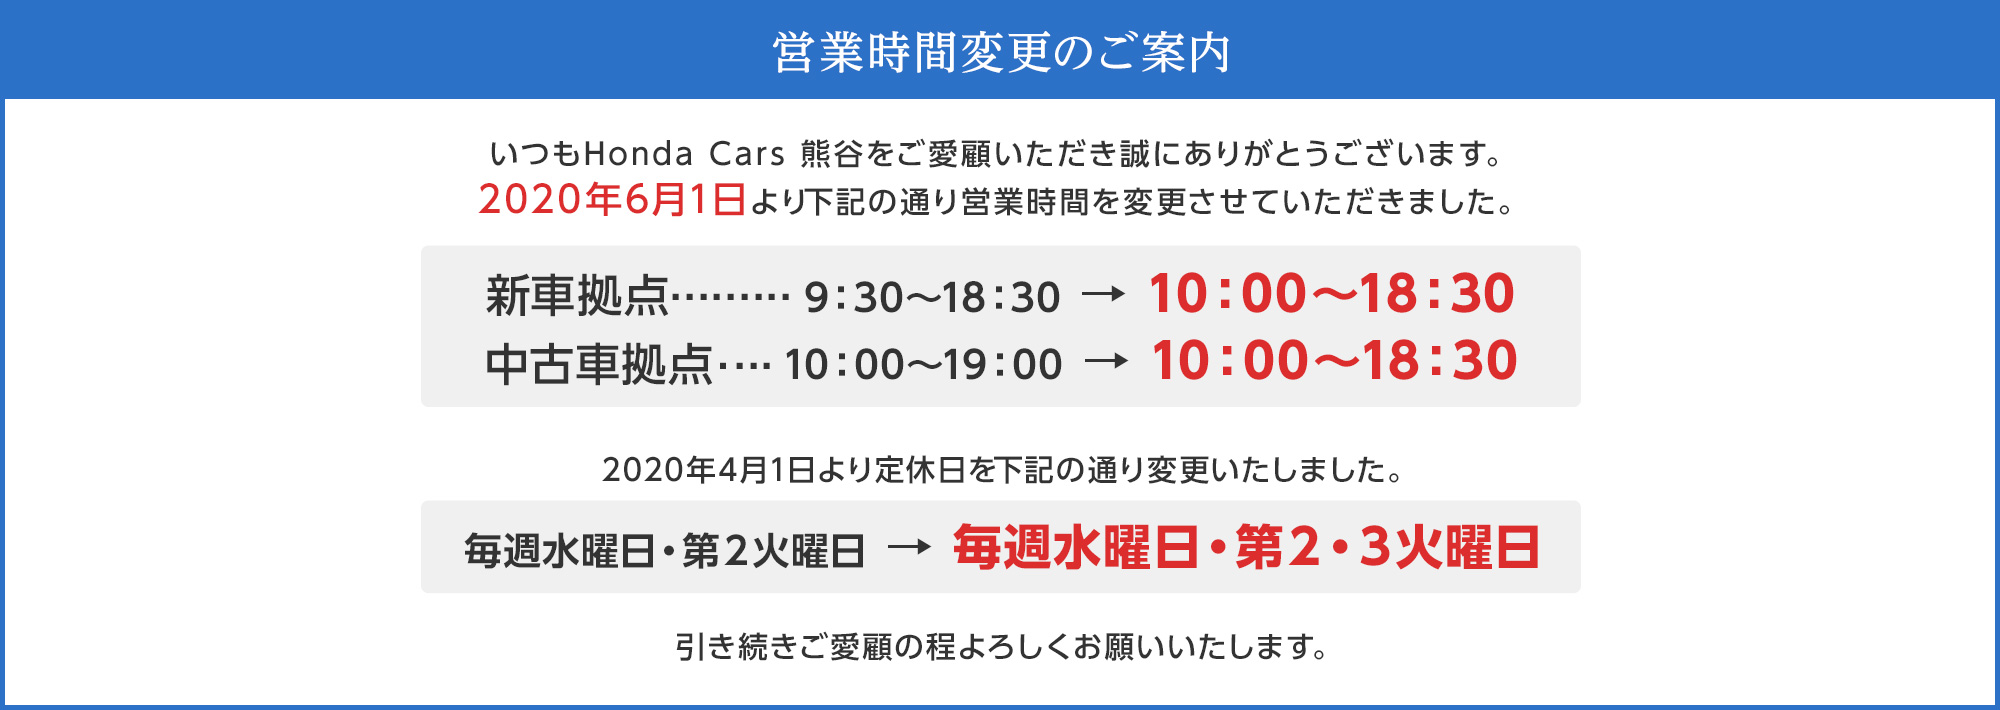 Honda Cars 熊谷 埼玉県のhondaディーラー